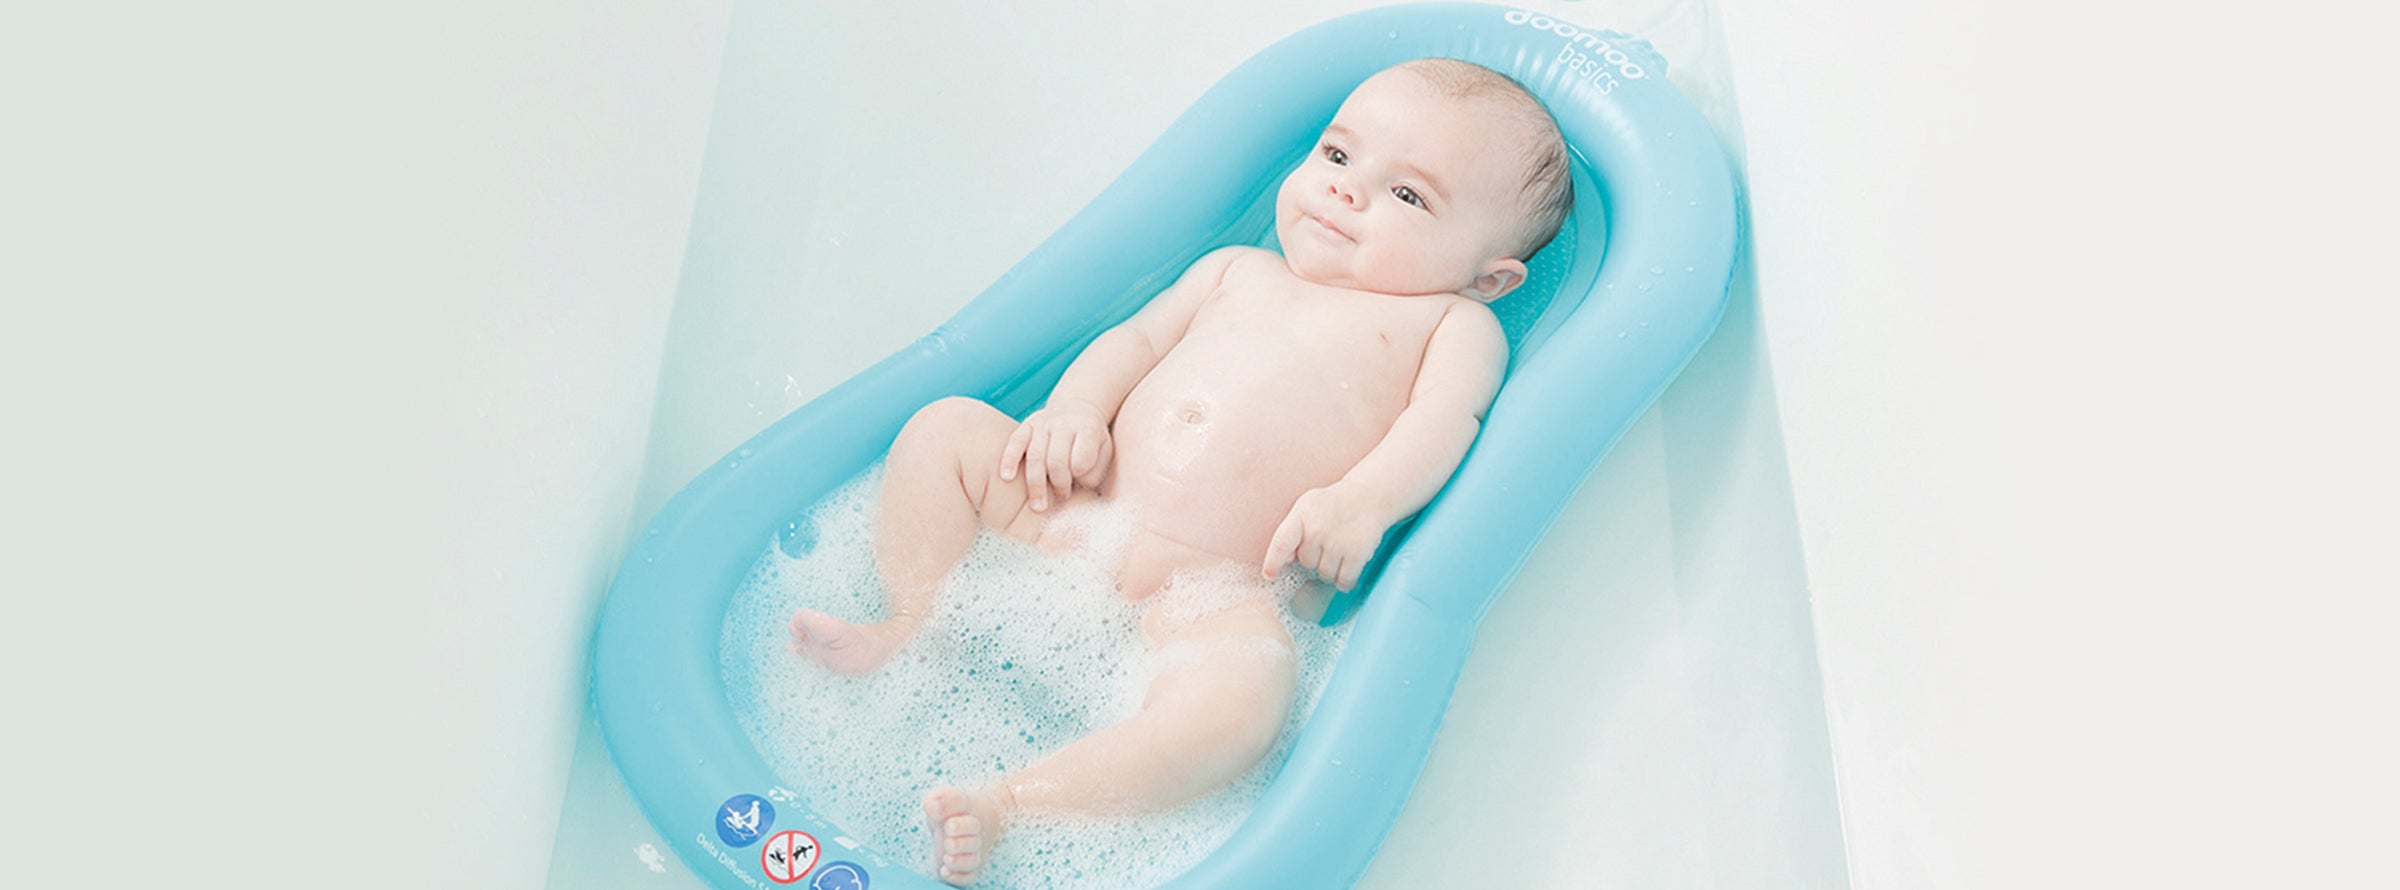 baby bath time cushion float tub